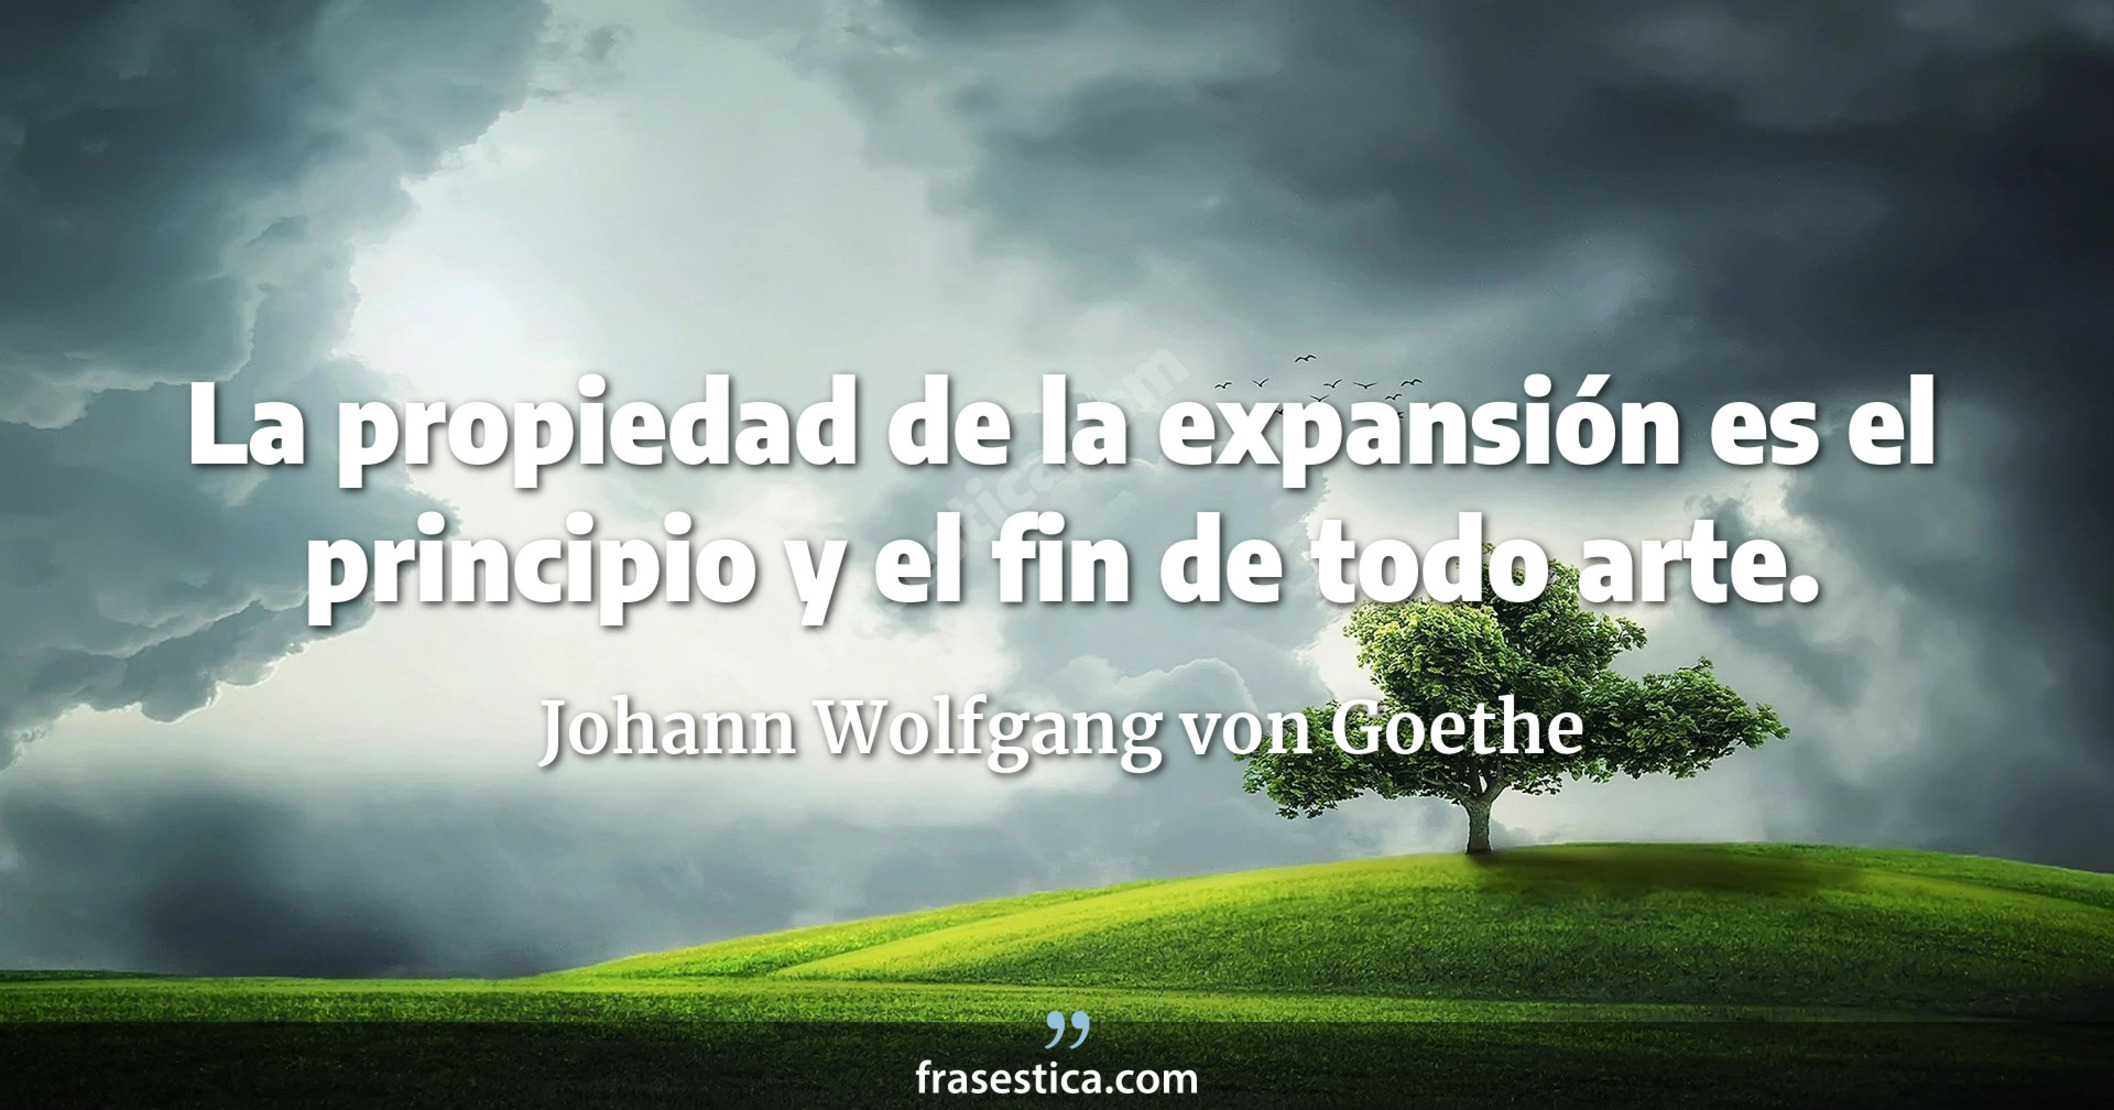 La propiedad de la expansión es el principio y el fin de todo arte. - Johann Wolfgang von Goethe